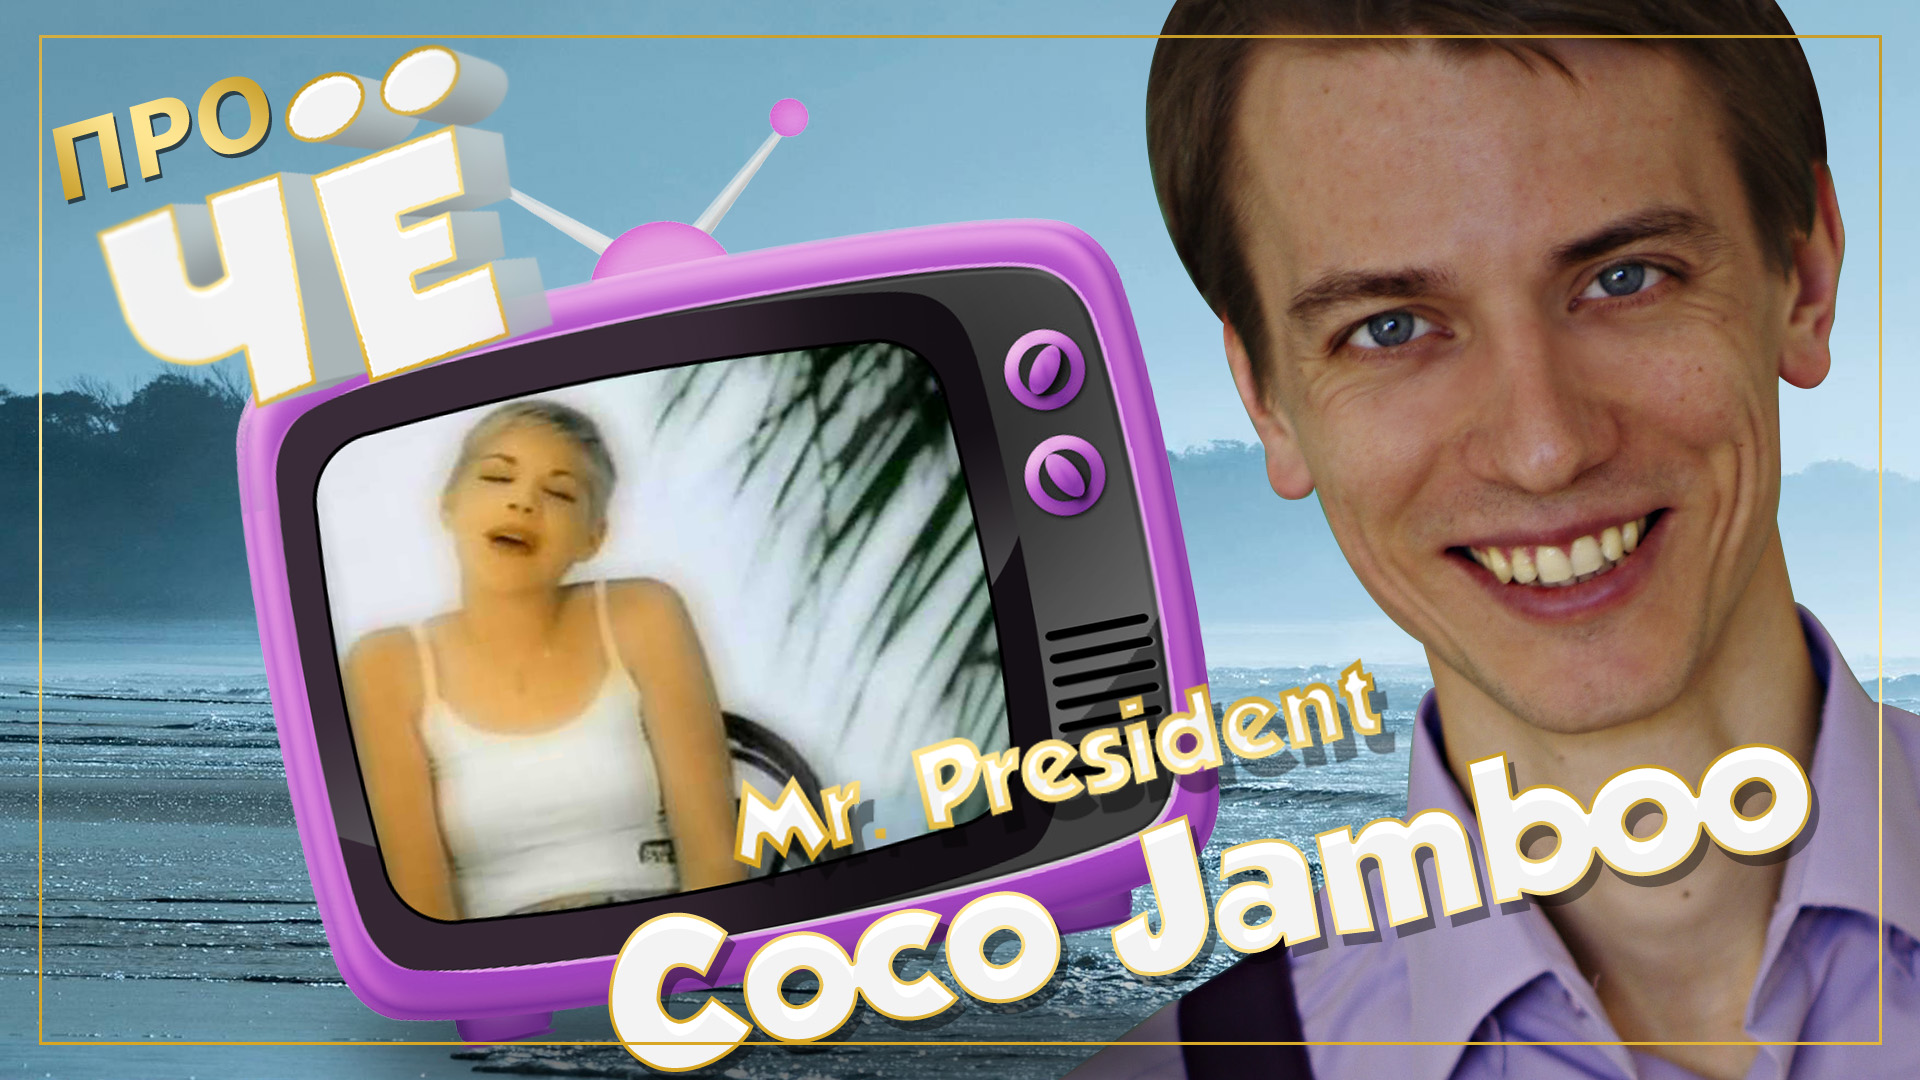 Коко джамбо перевод. Coco Jumbo перевод. Mr President Coco Jumbo перевод. Coco Jamboo · Mr. President перевод. Coco под.